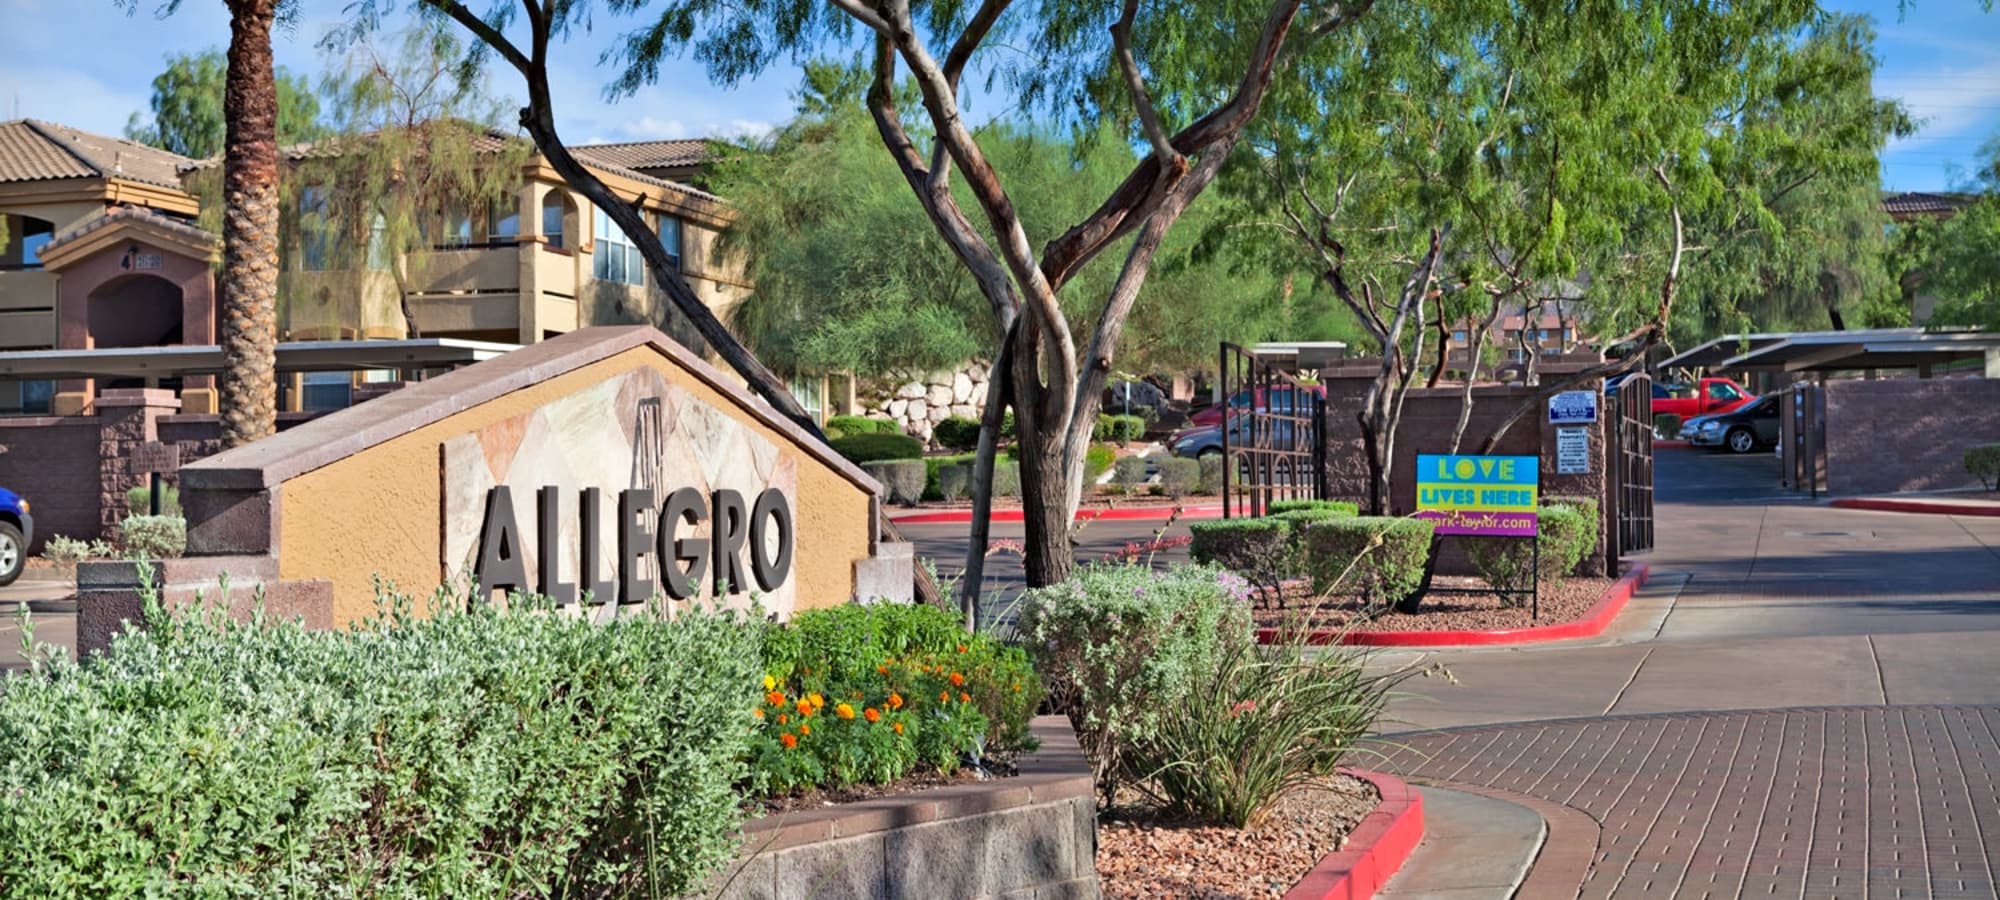 Allegro at La Entrada entry signage in Henderson, Nevada